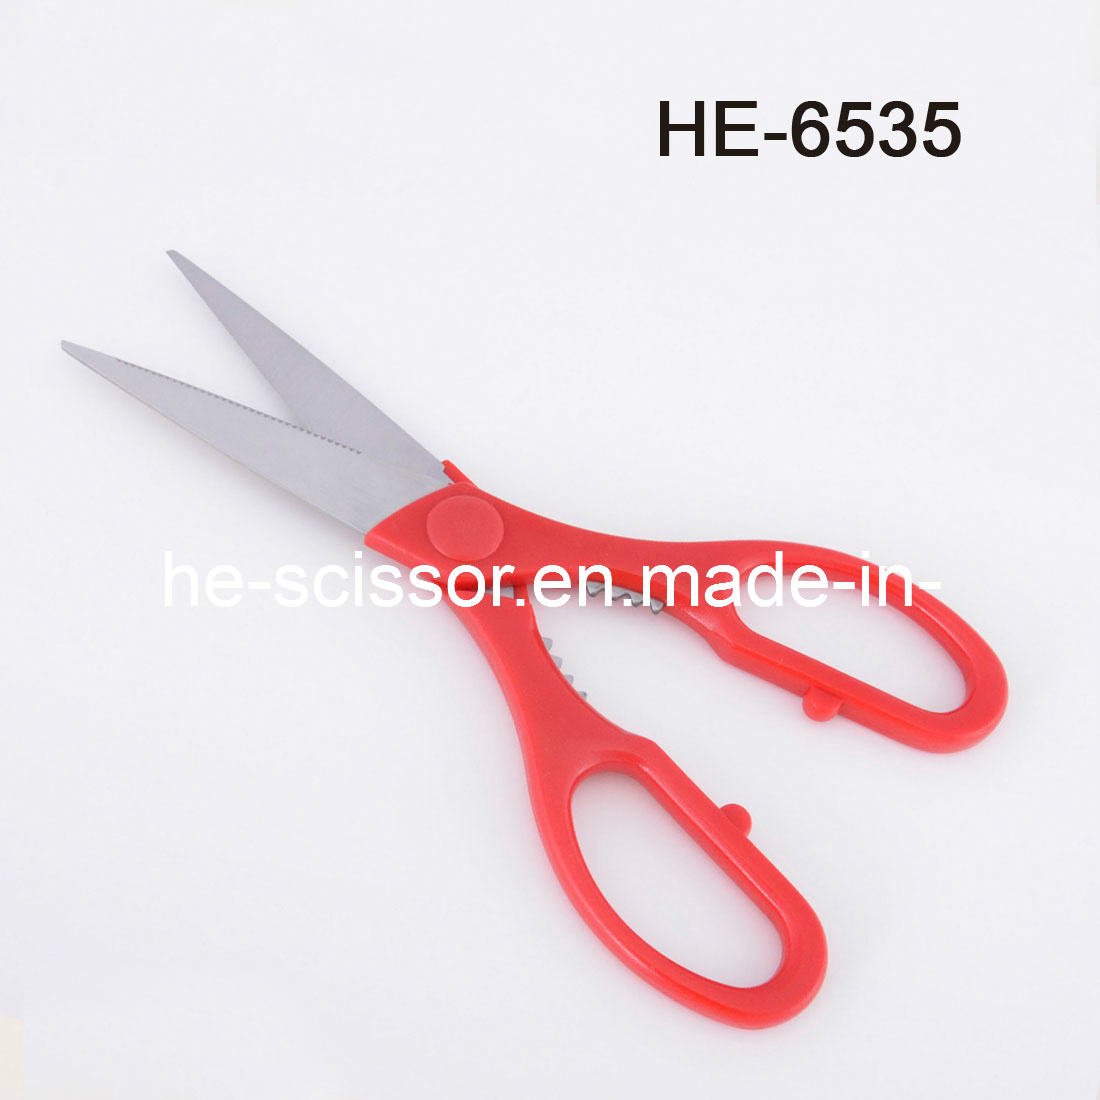 Reasonable Price Scissors (HE-6535)